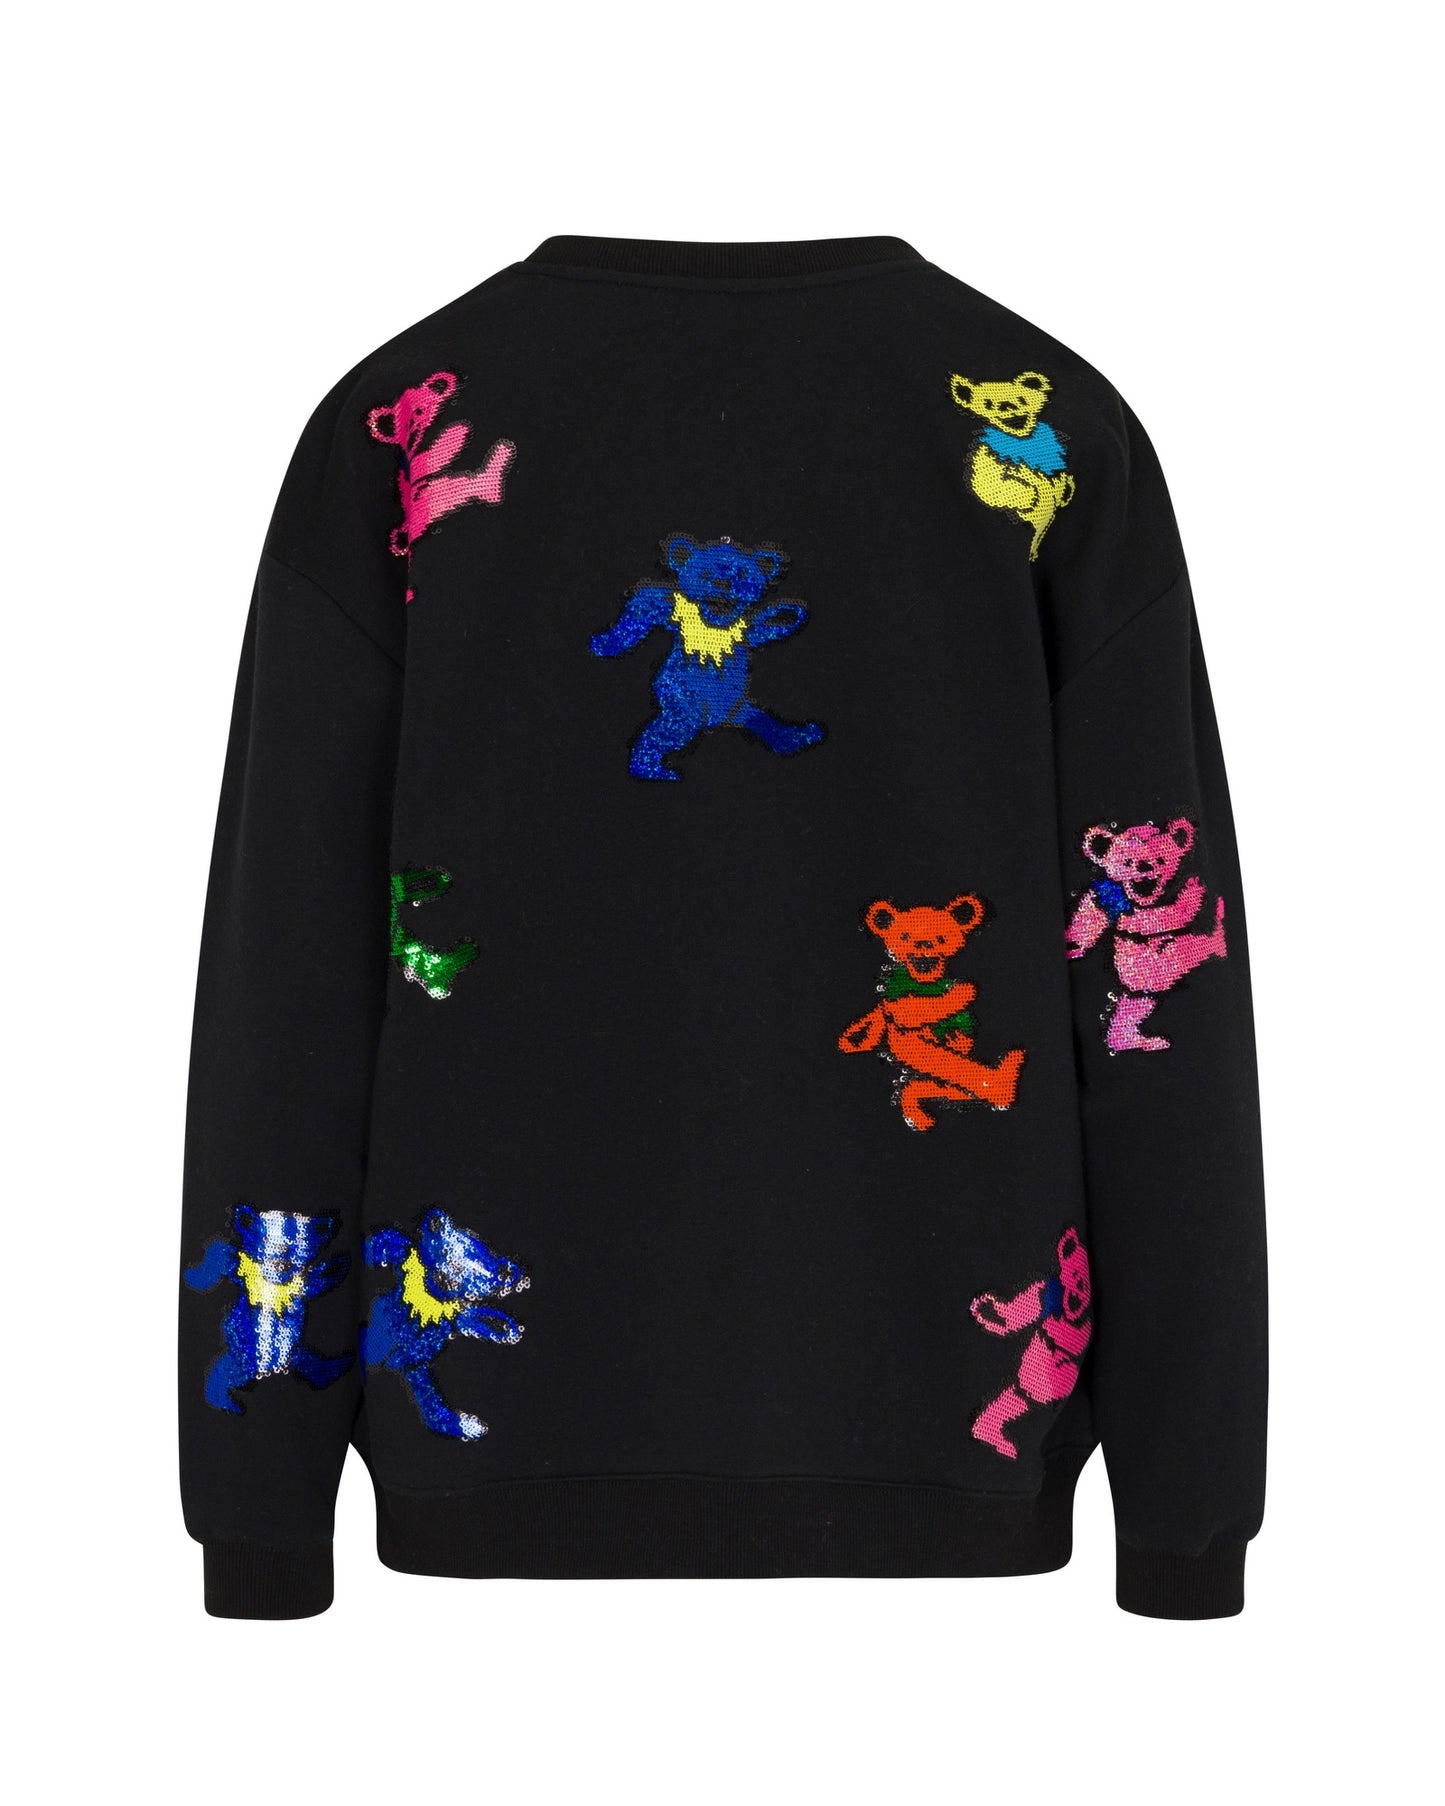 Grateful Dead Dancing Bears Sequin Sweatshirt - Black